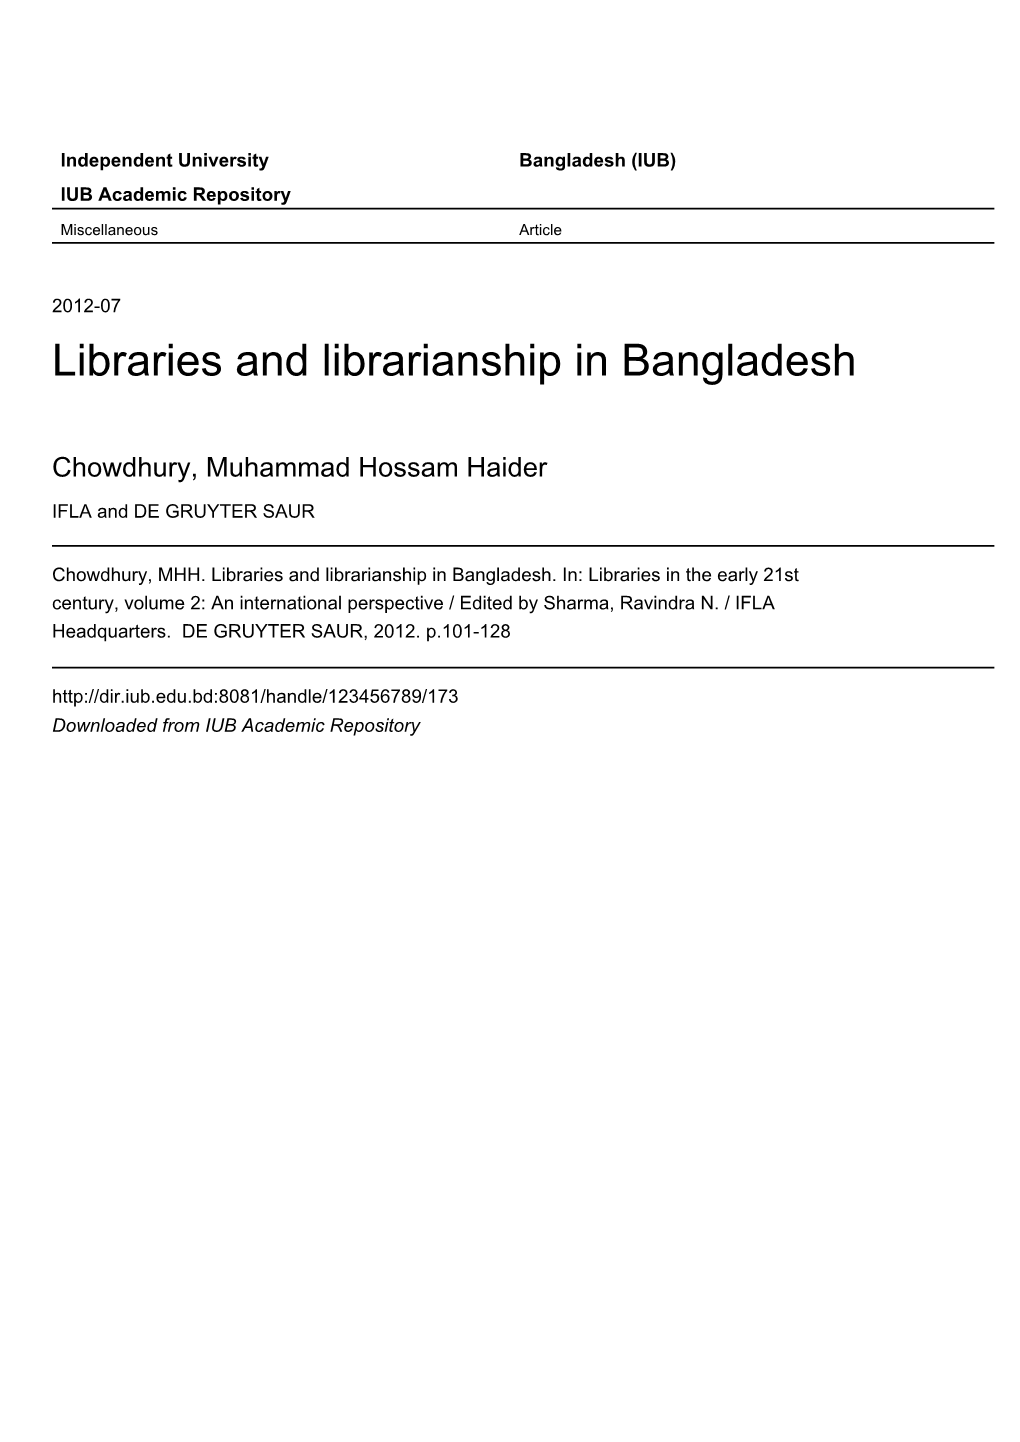 Libraries and Librarianship in Bangladesh